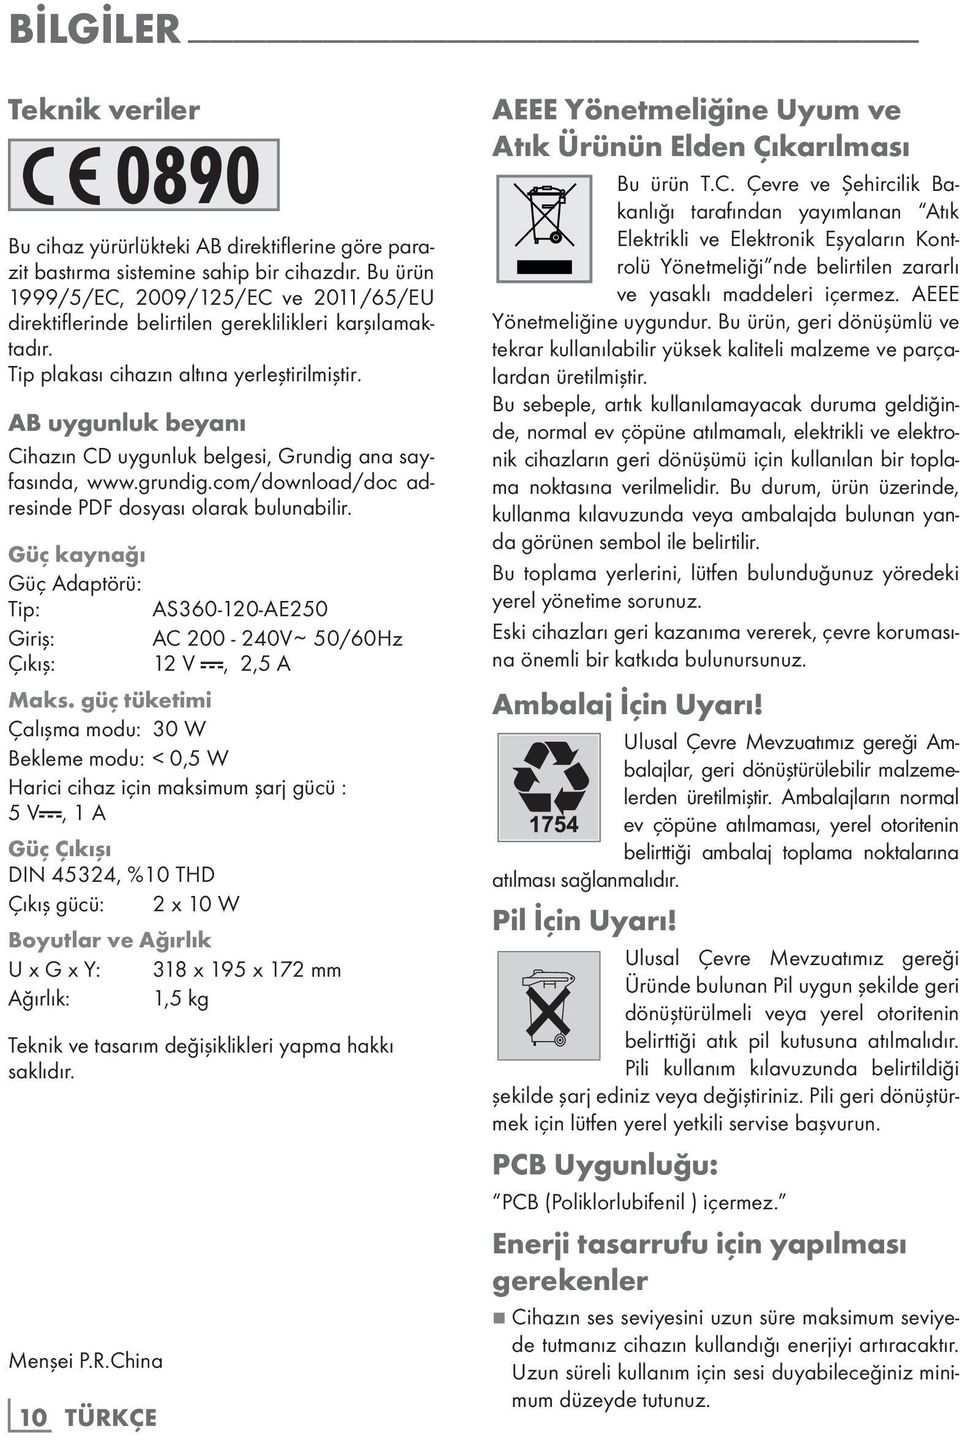 AB uygunluk beyanı Cihazın CD uygunluk belgesi, Grundig ana sayfasında, www.grundig.com/download/doc adresinde PDF dosyası olarak bulunabilir.